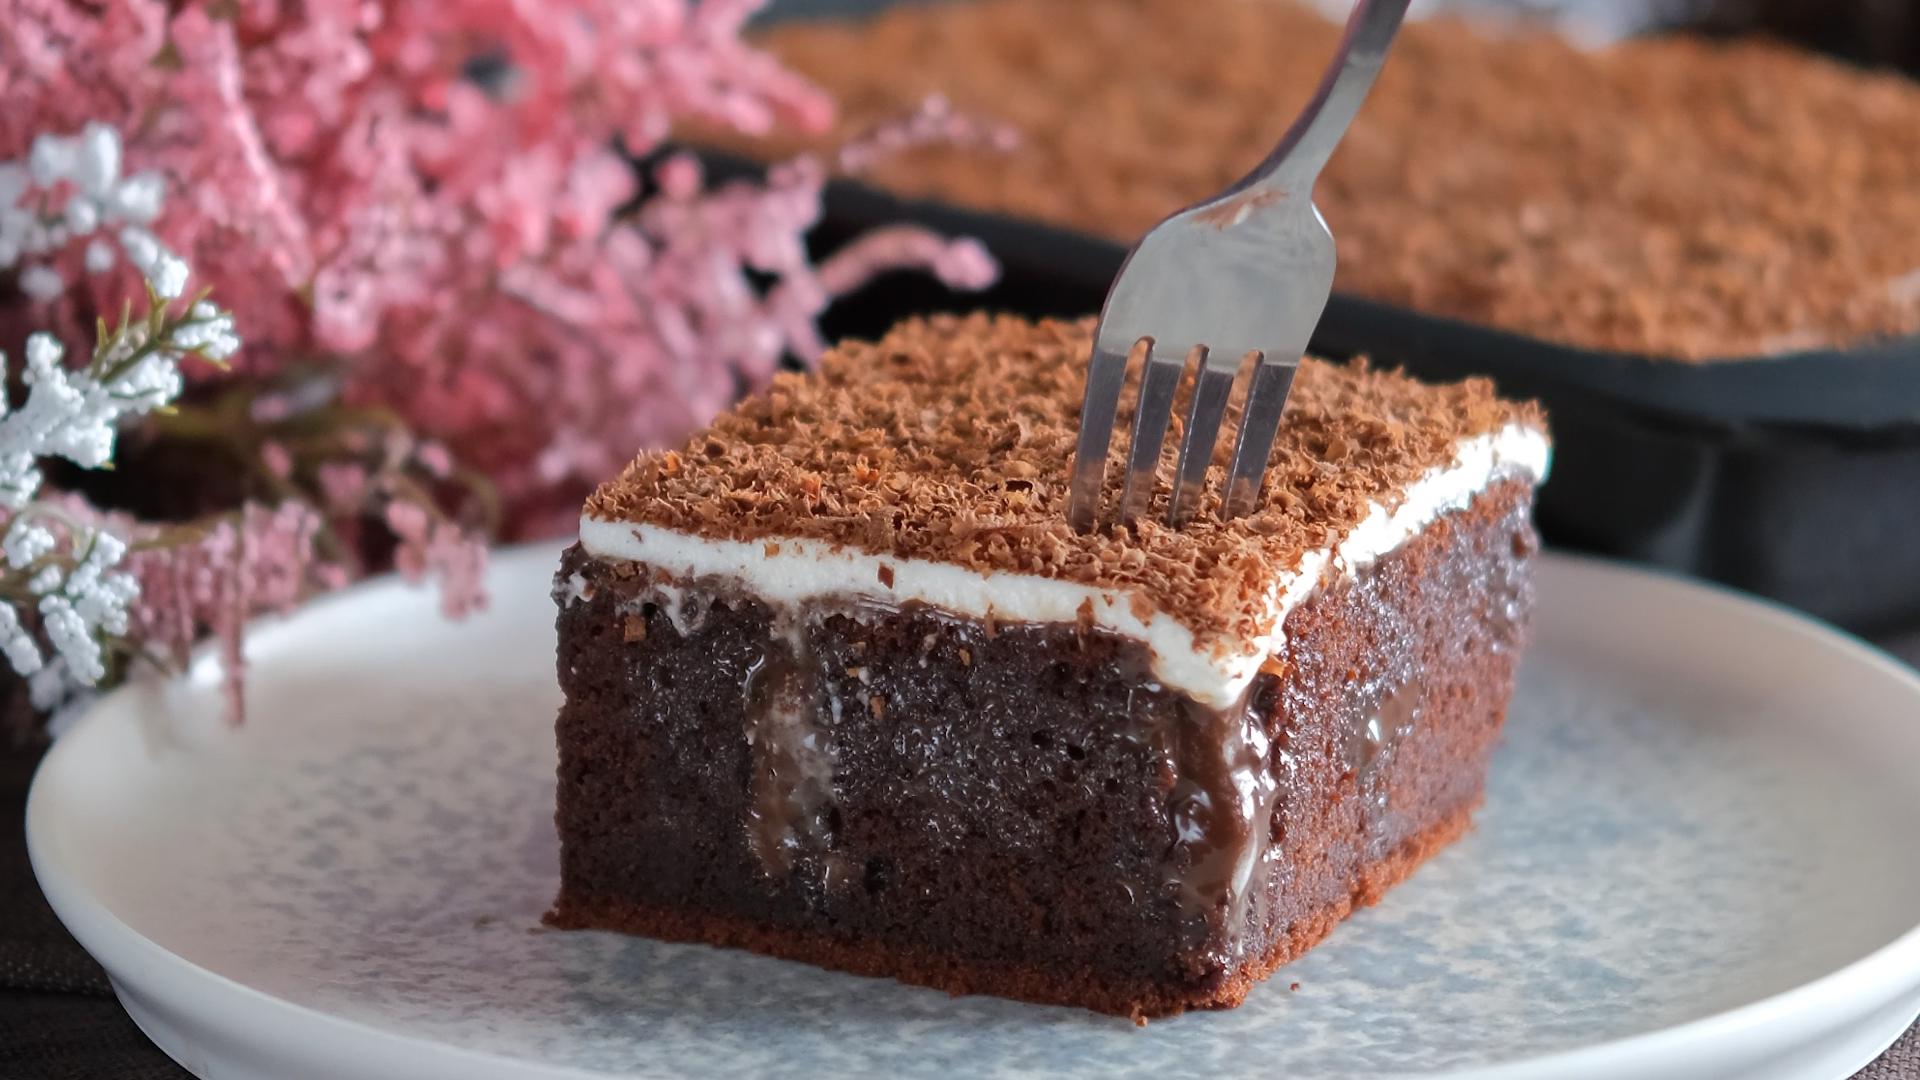 σοκολατόπιτα-με-γλάσο-και-σαντιγί-poke cake-συνταγή-